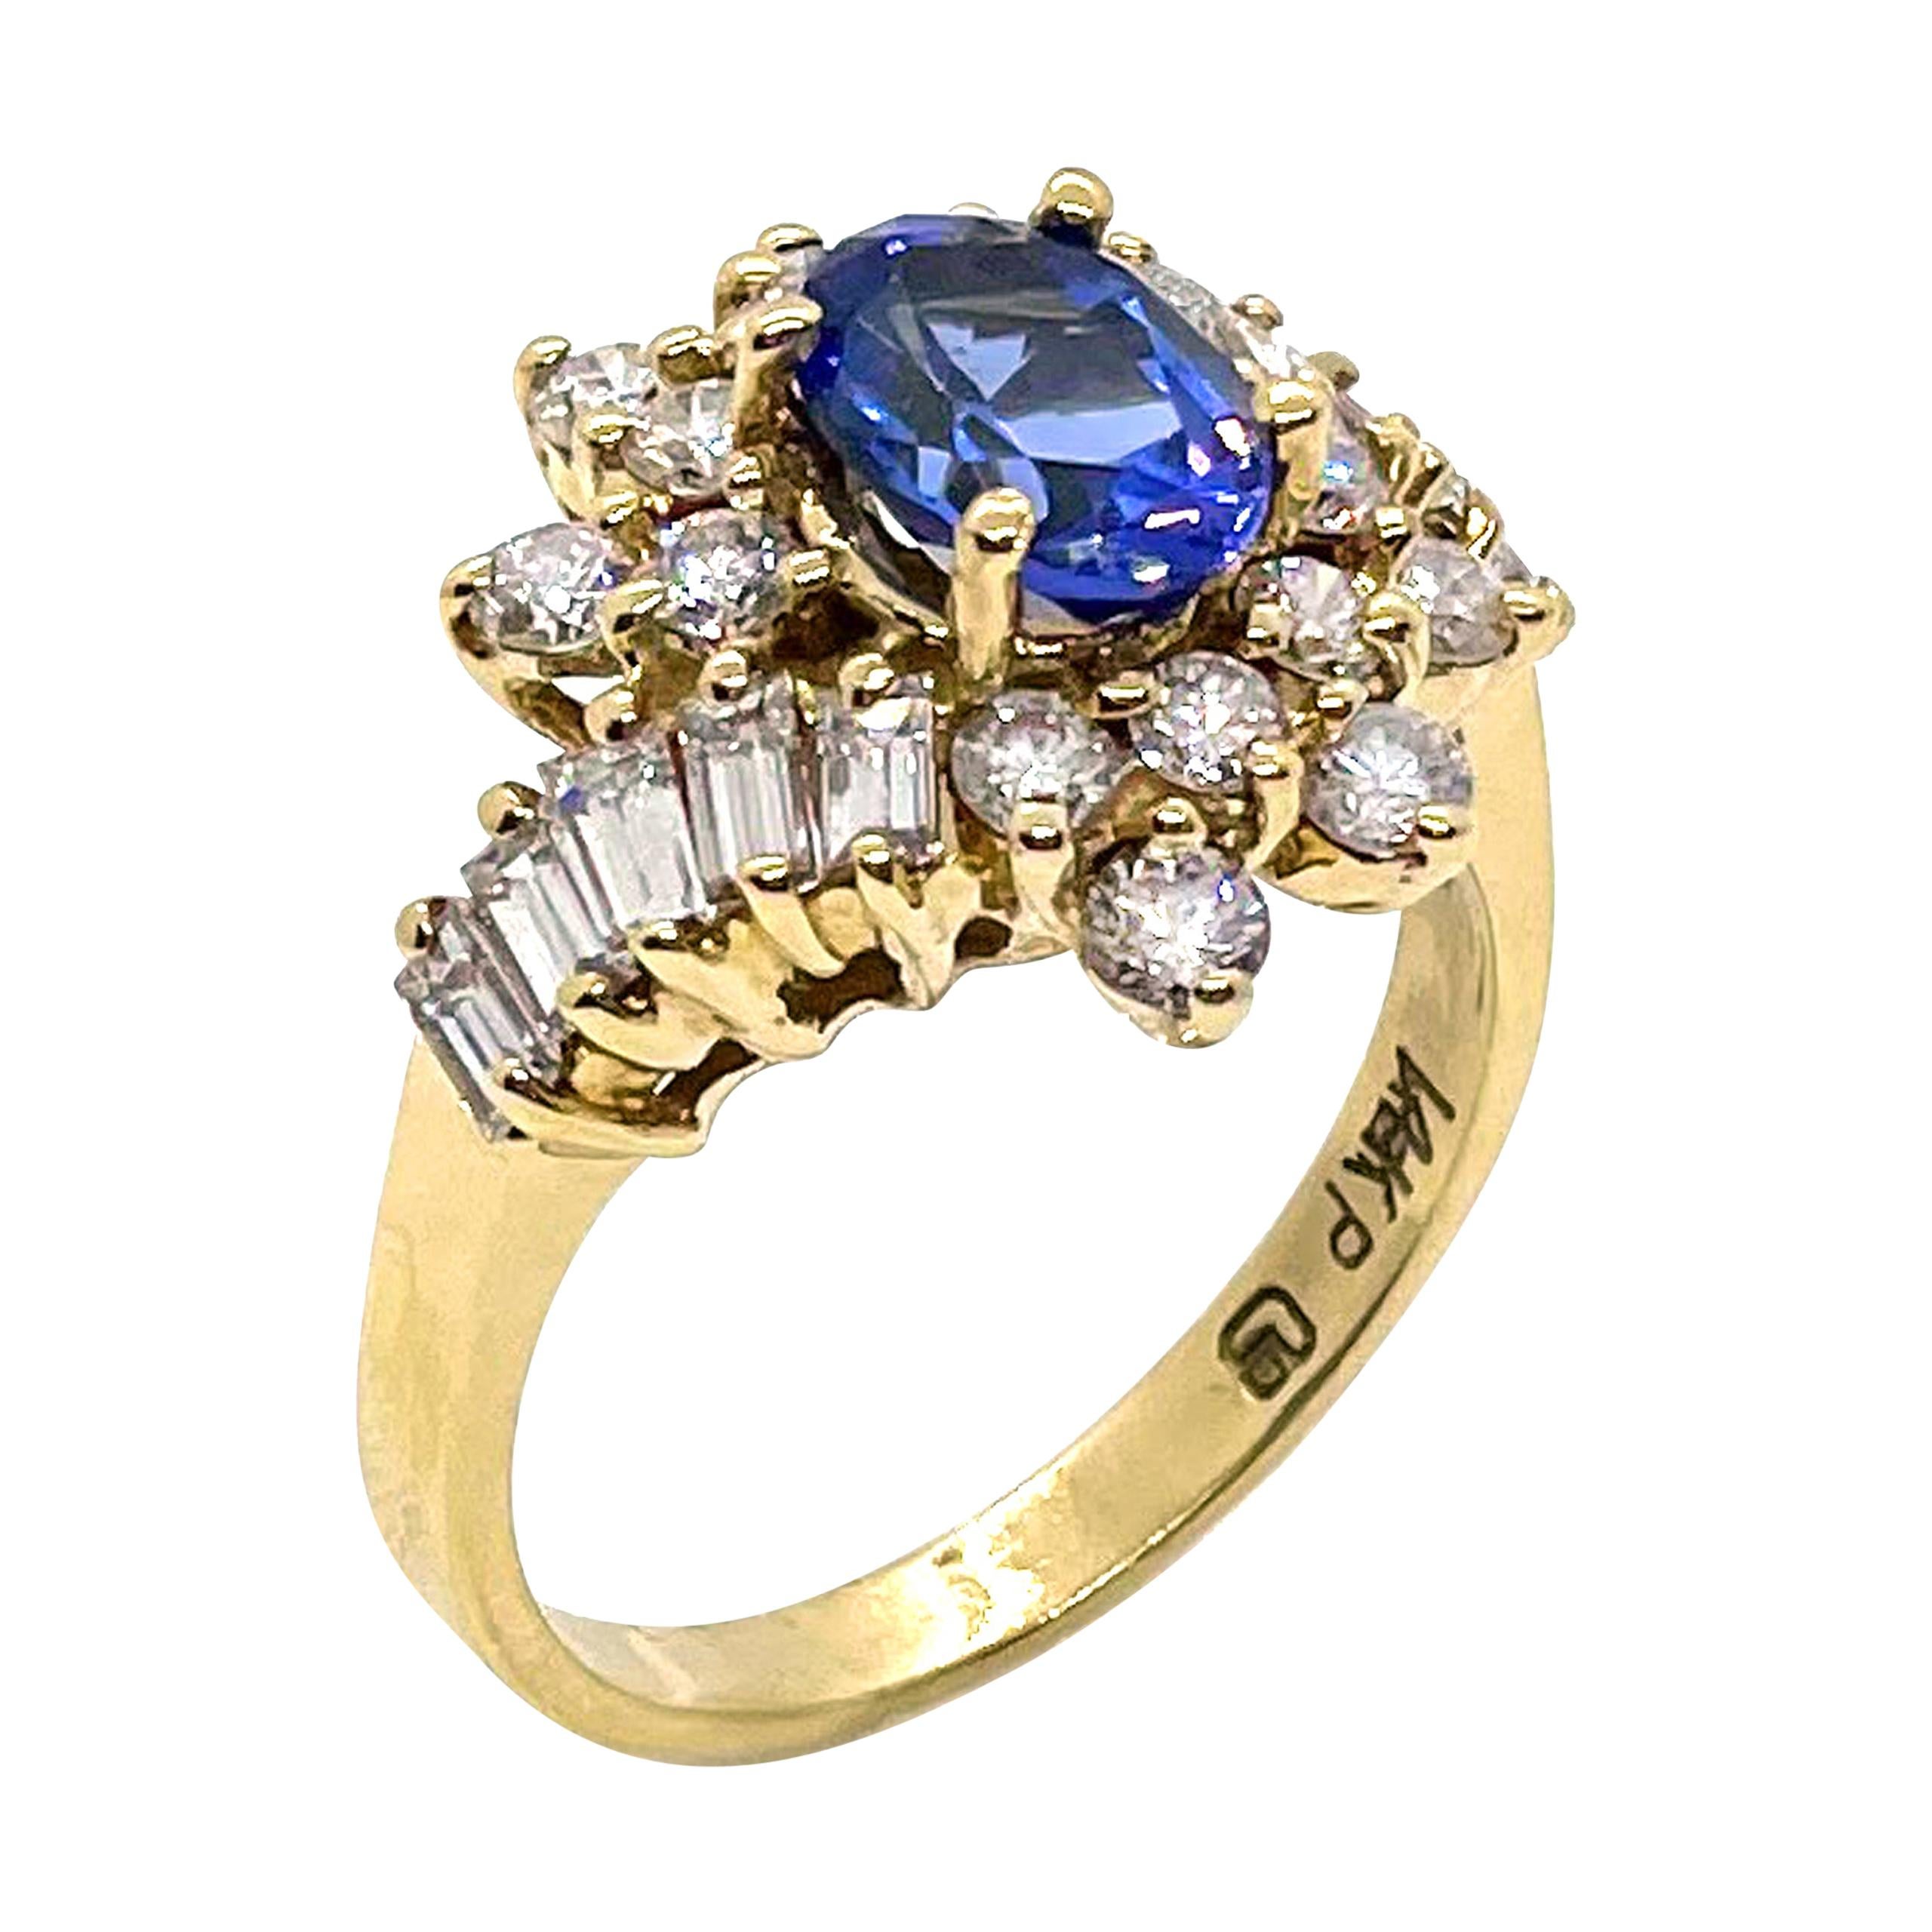 Vintage Tanzanite Ring with Diamonds Set in 14k Gold, Circa 1985